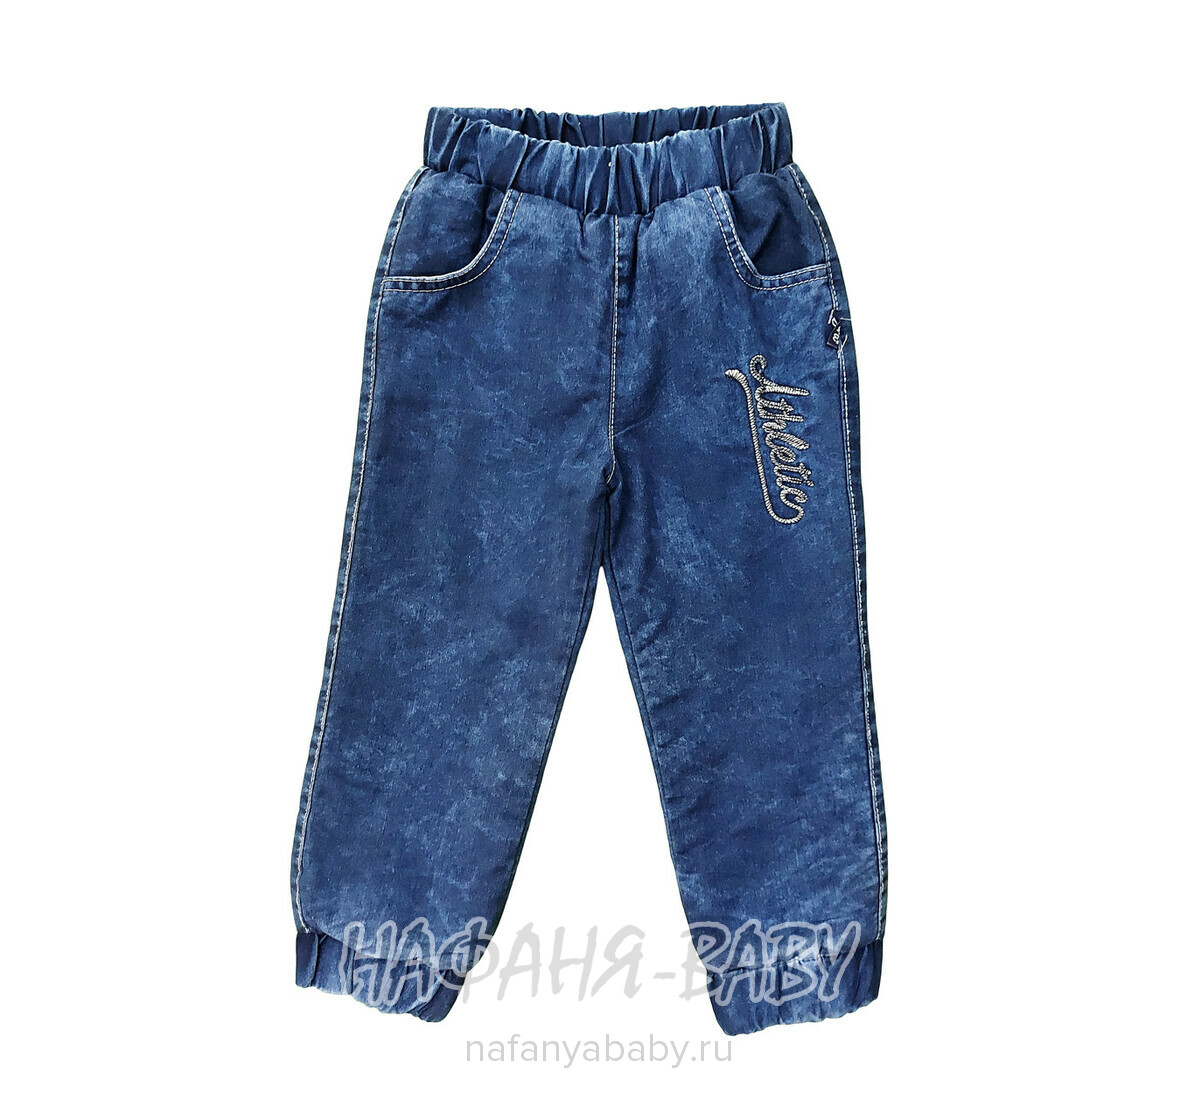 Детские теплые джинсы AKIRA арт: 2613, 1-4 года, 5-9 лет, оптом Турция